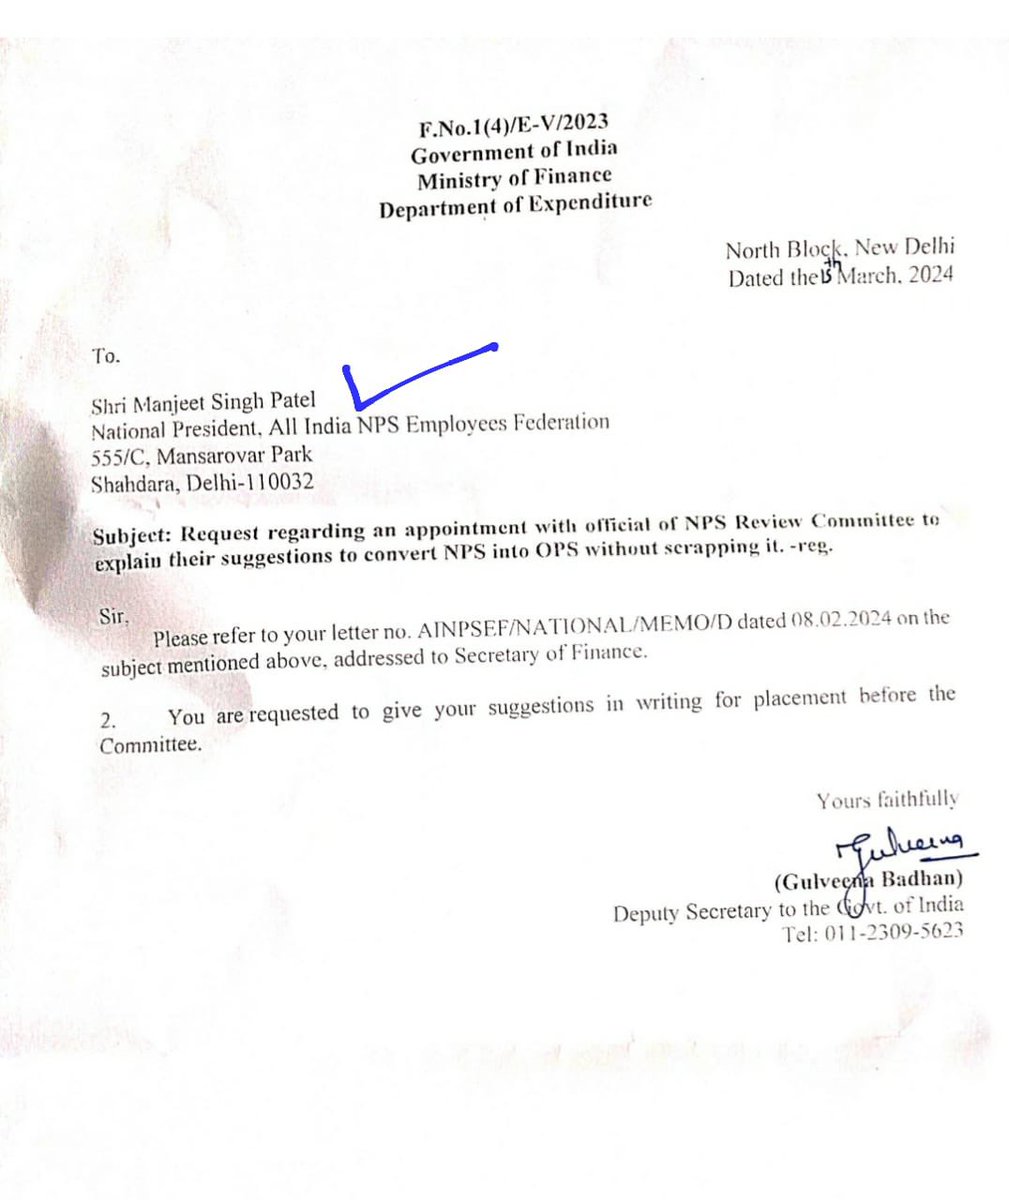 वित्त मंत्रालय, भारत सरकार के आमंत्रण पर #NPS को हुबहू #OPS में कन्वर्ट करने पर ऑल इंडिया एनपीएस एम्पलाइज फेडरेशन (नेशनल मिशन फॉर ओल्ड पेंशन स्कीम भारत) की तरफ से अपने सुझाव रखने वित्त मंत्रालय पहुंचे... #ManjeetSinghPatel #Sudhirrupjee #Vinodyadav @Ainpsef @ManjeetIMOPS…